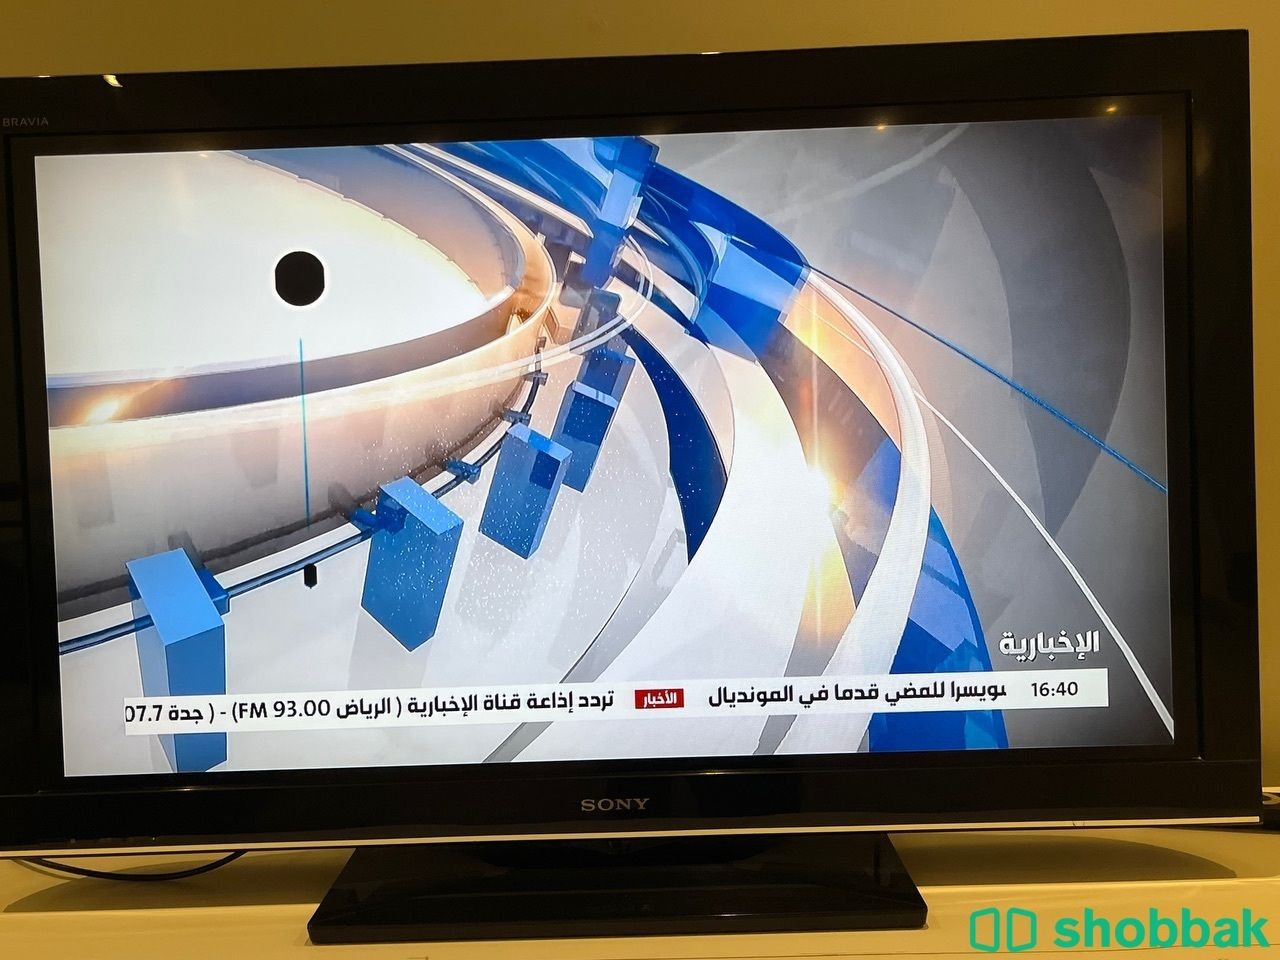 للبيع تيلفزيون سوني فيه نقطه سوده في الشاشه  Shobbak Saudi Arabia